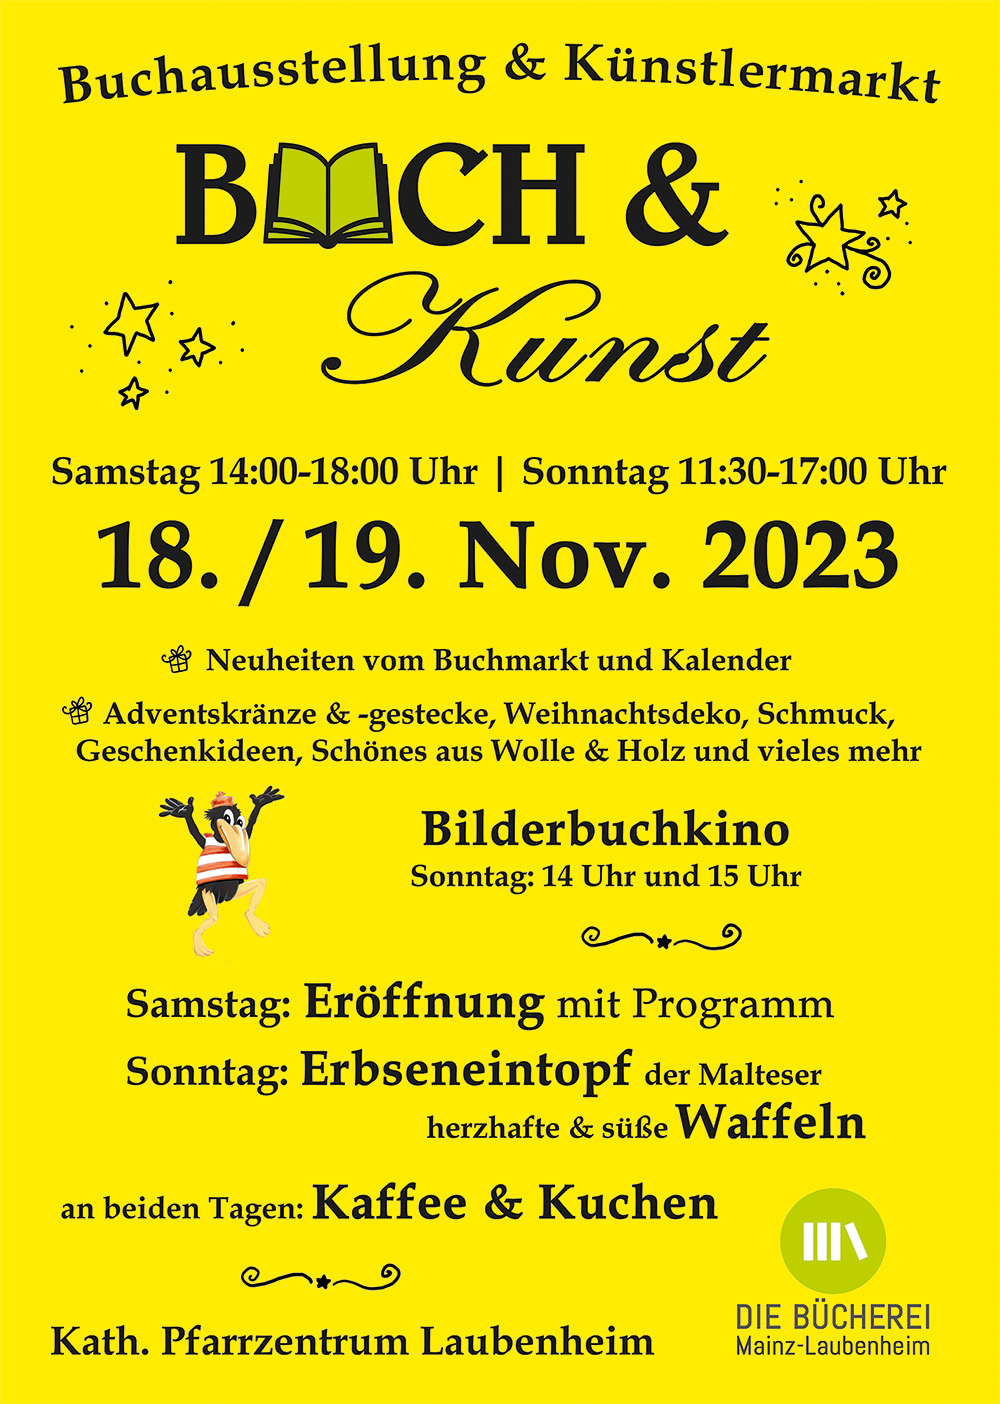 Plakat-Buchausstellung-2023-Buecherei-Mainz-Laubenheim-rgb (c) Die Bücherei Mainz-Laubenheim